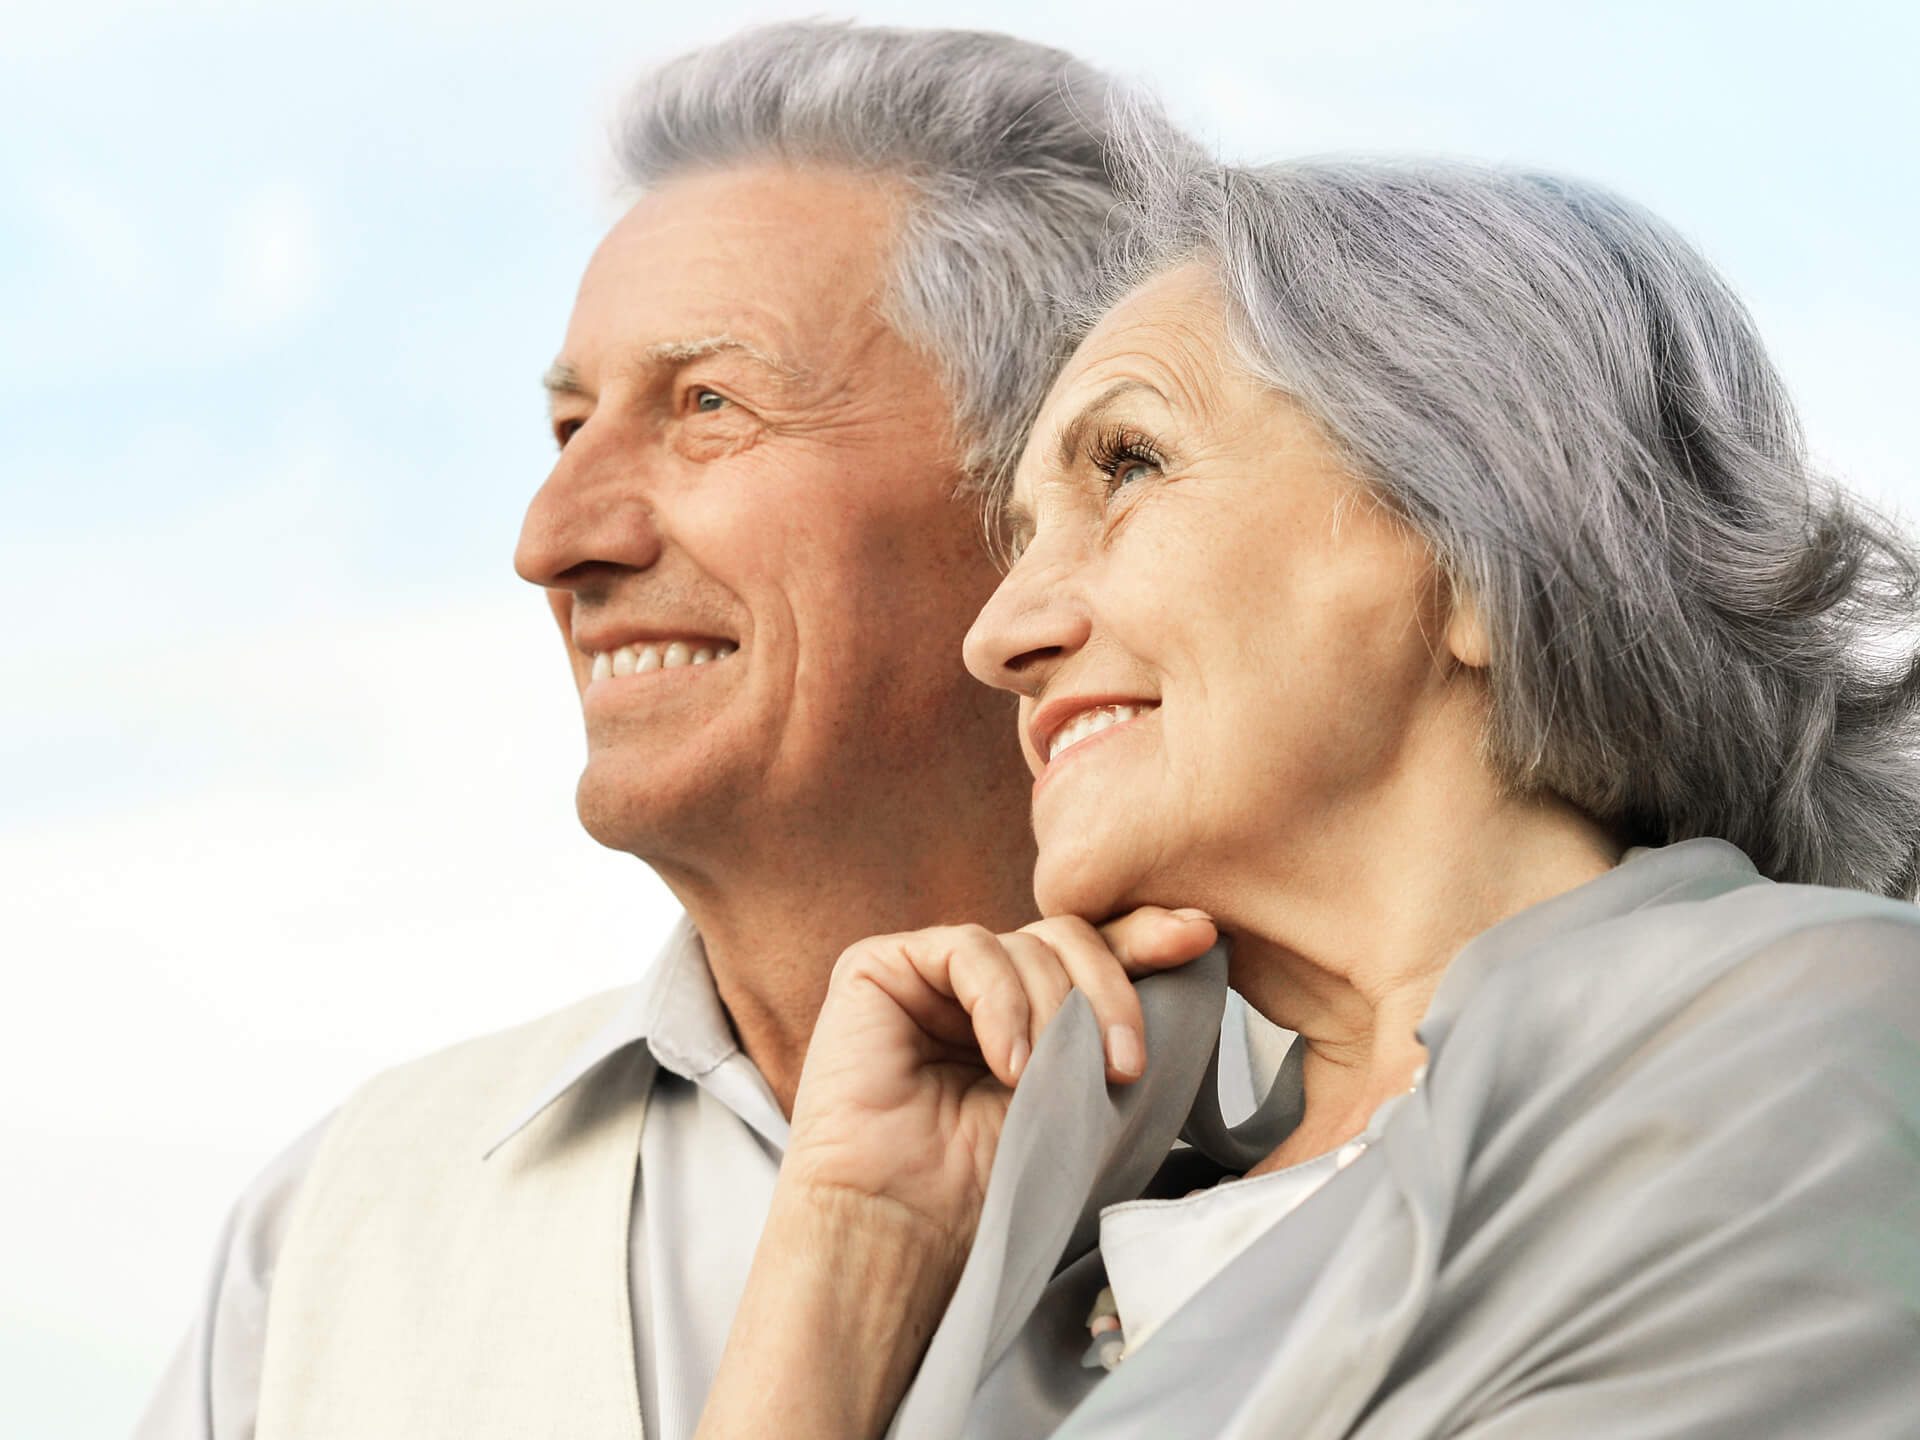 Couple, senior citizens, people, smiling, portrait, grey hair